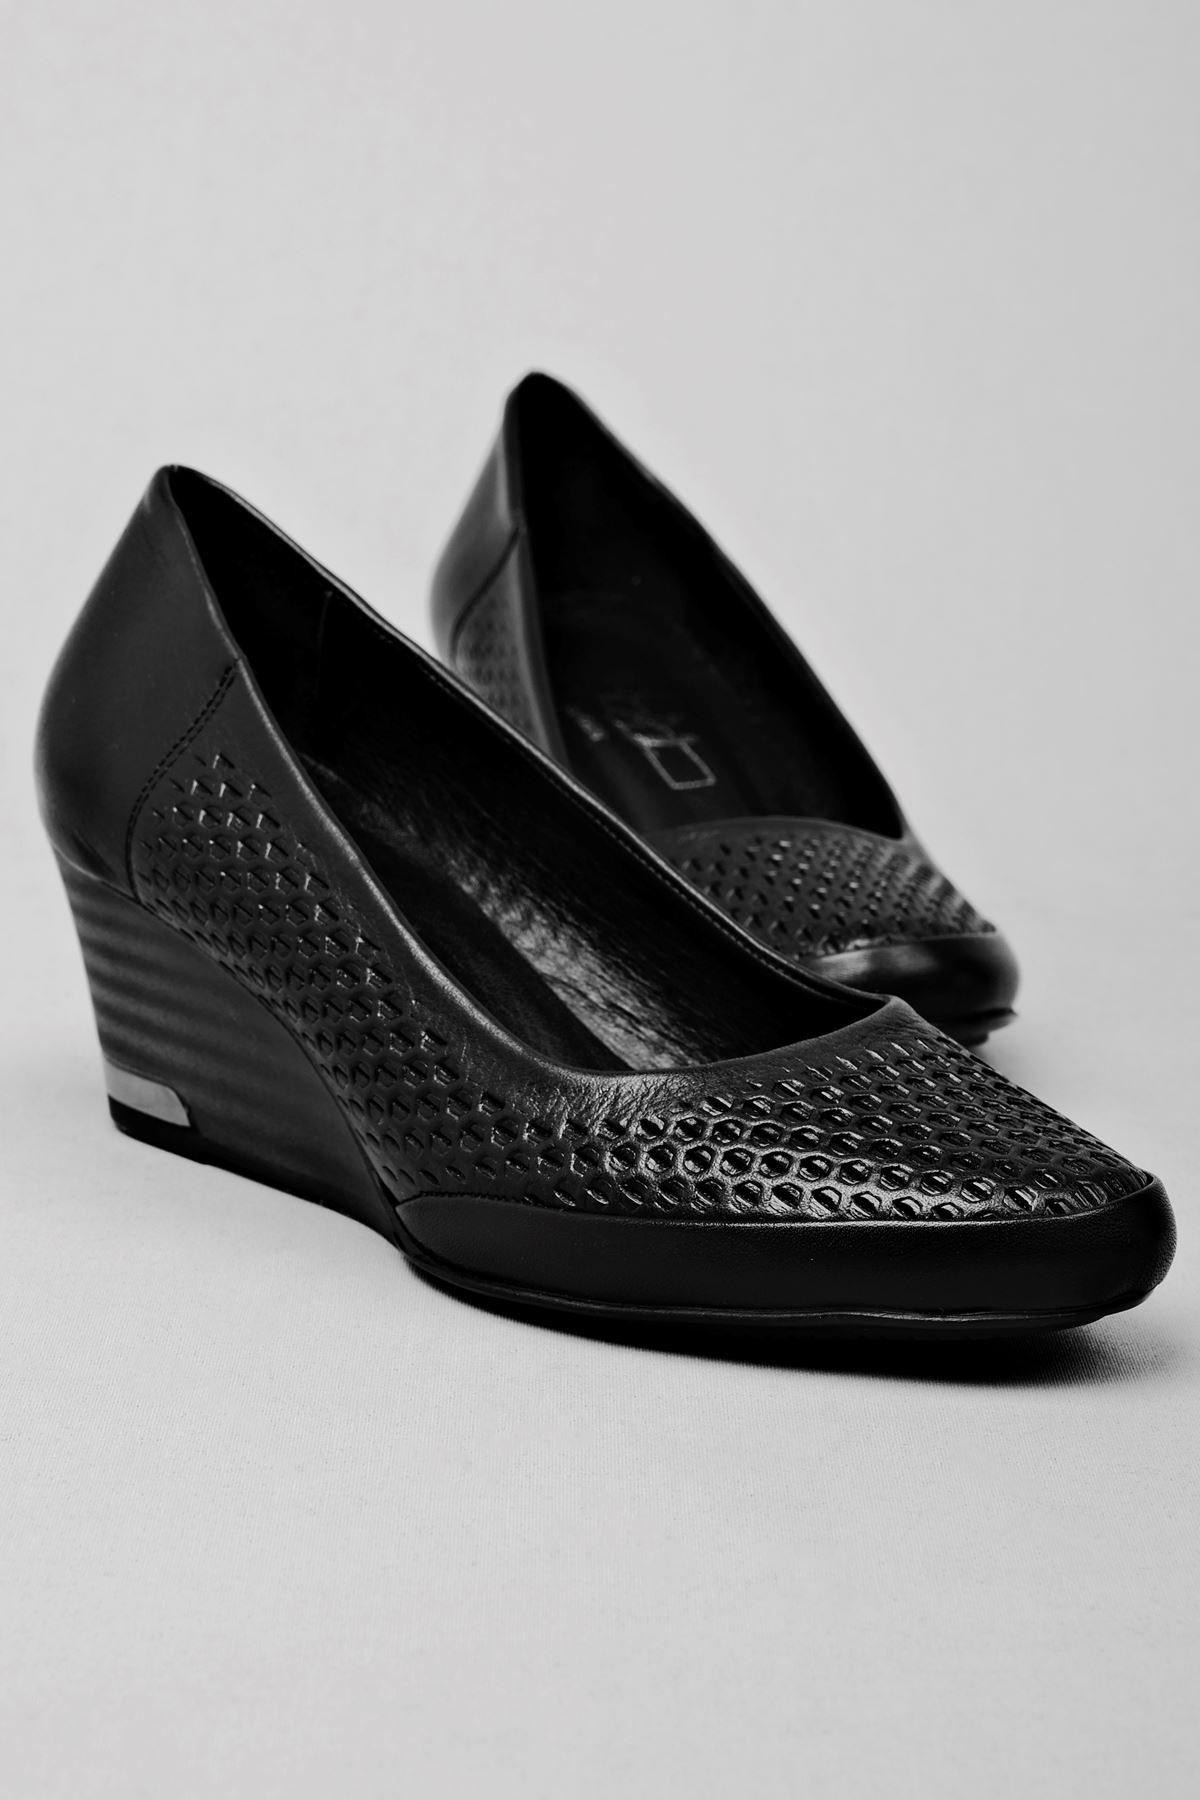 Sierta Kadın Hakiki Deri Ayakkabı Petek Desenli-siyah